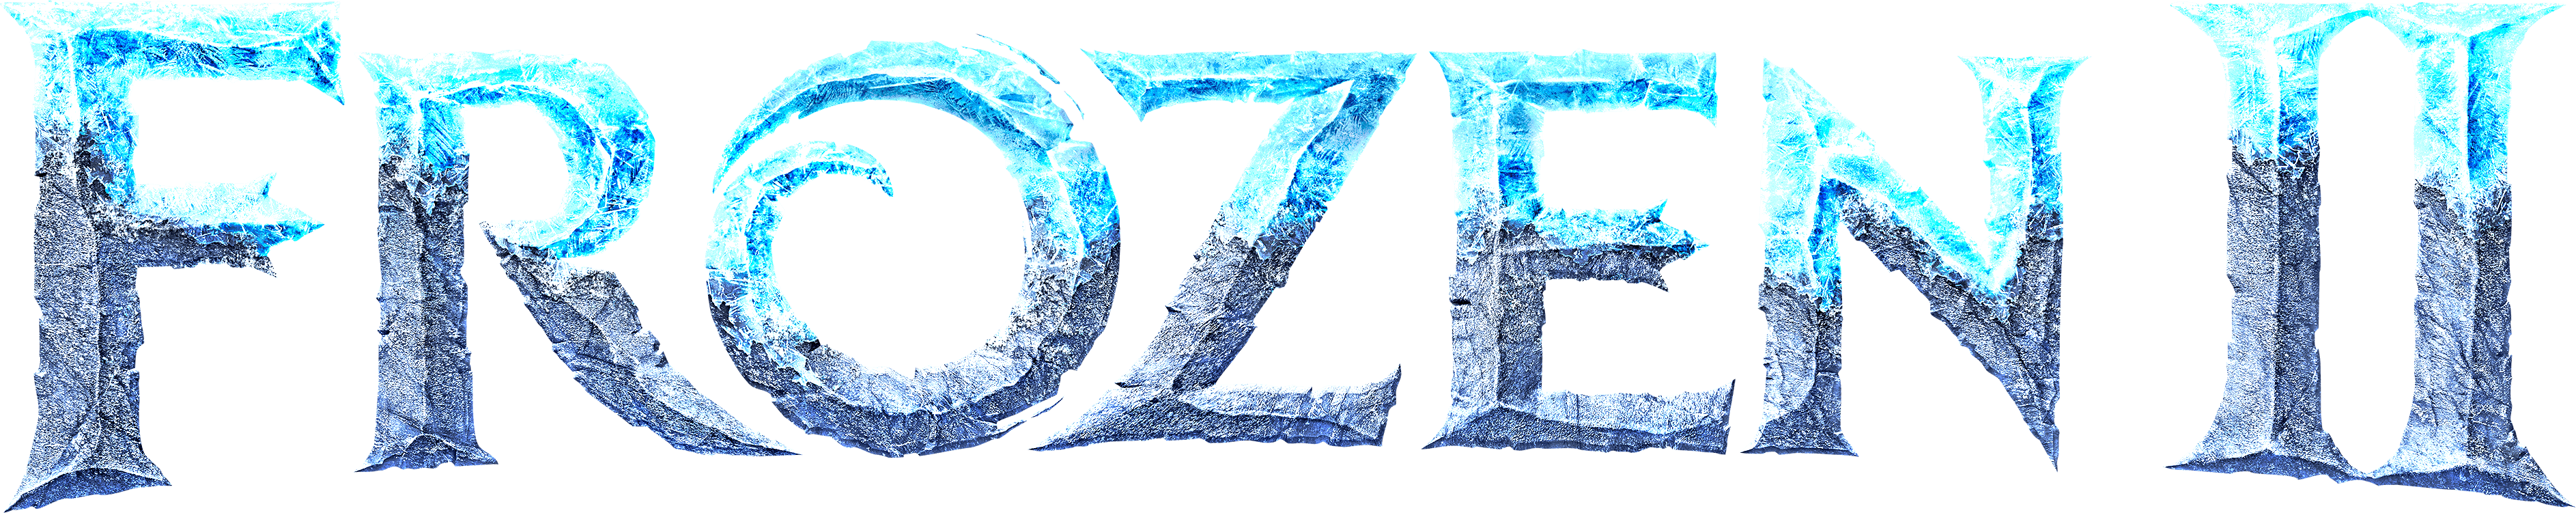 Frozen II logo